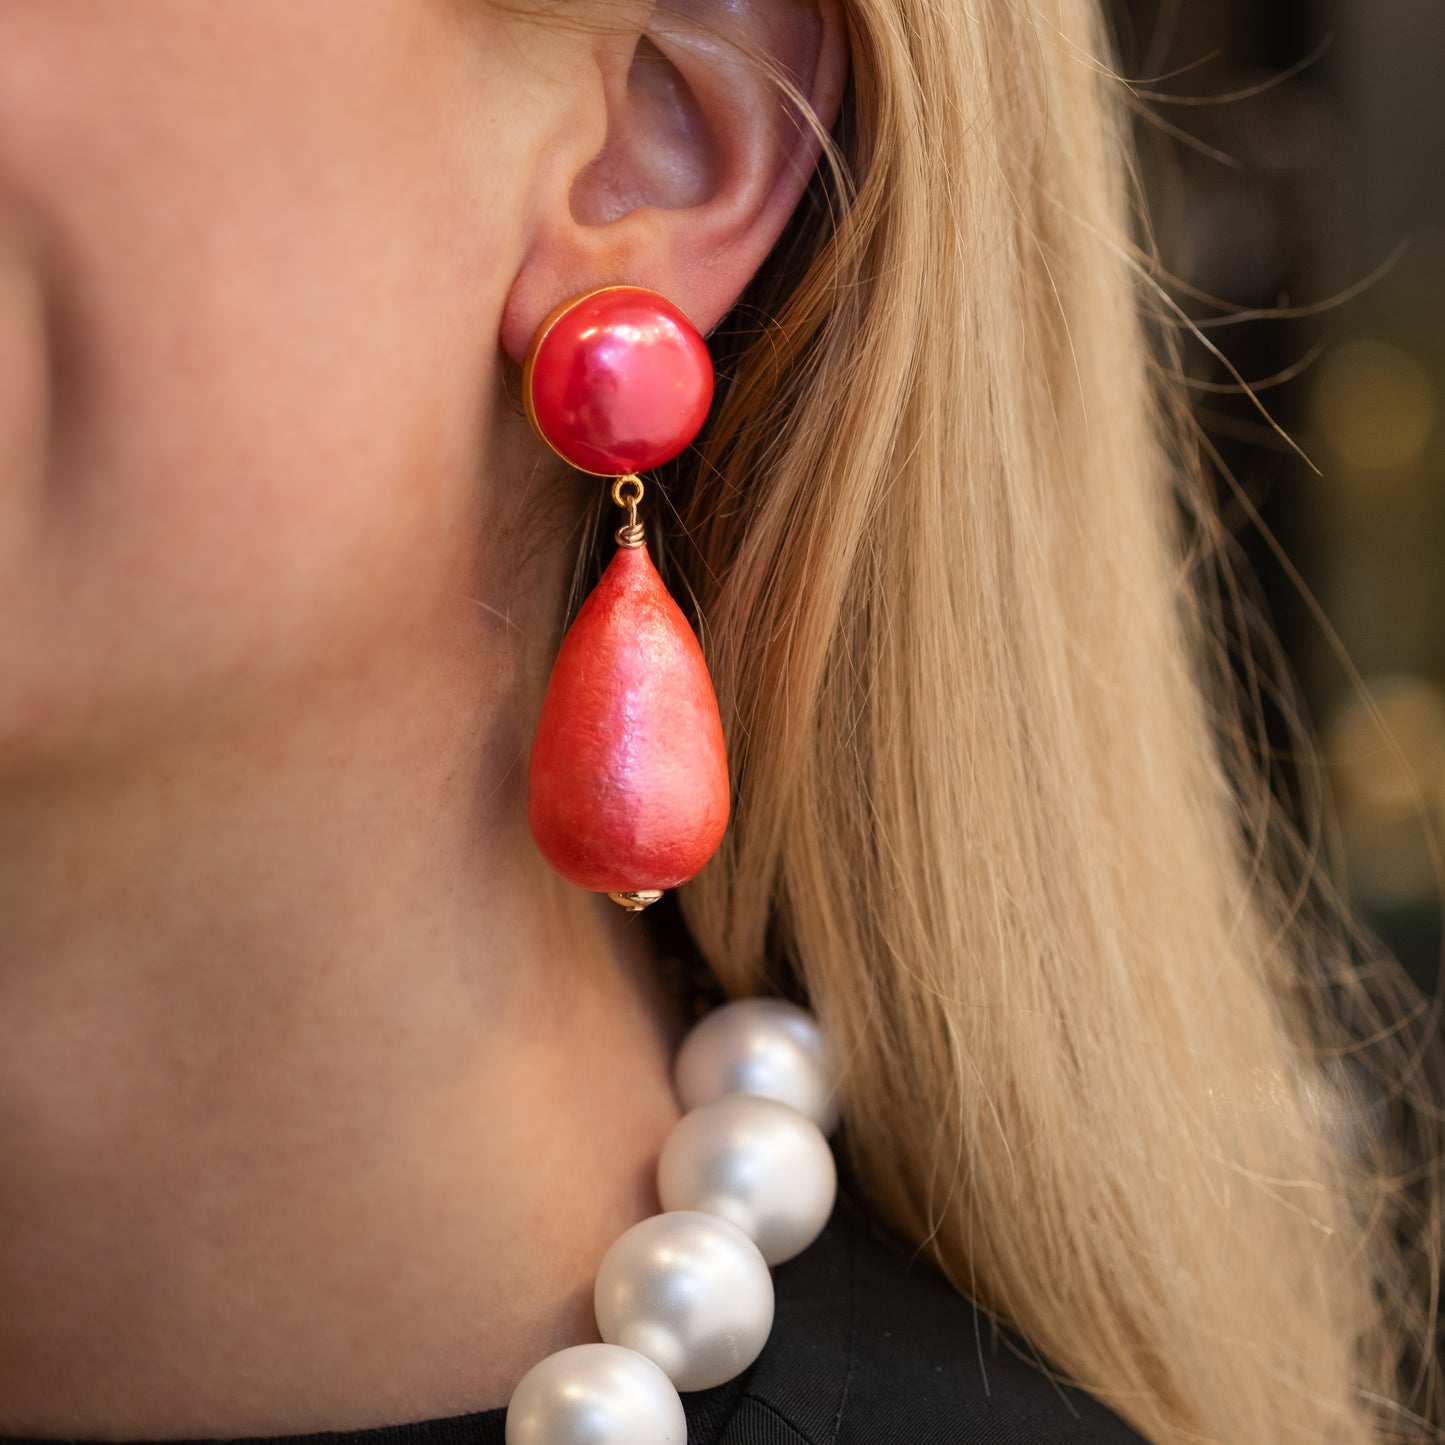 Carolina earrings